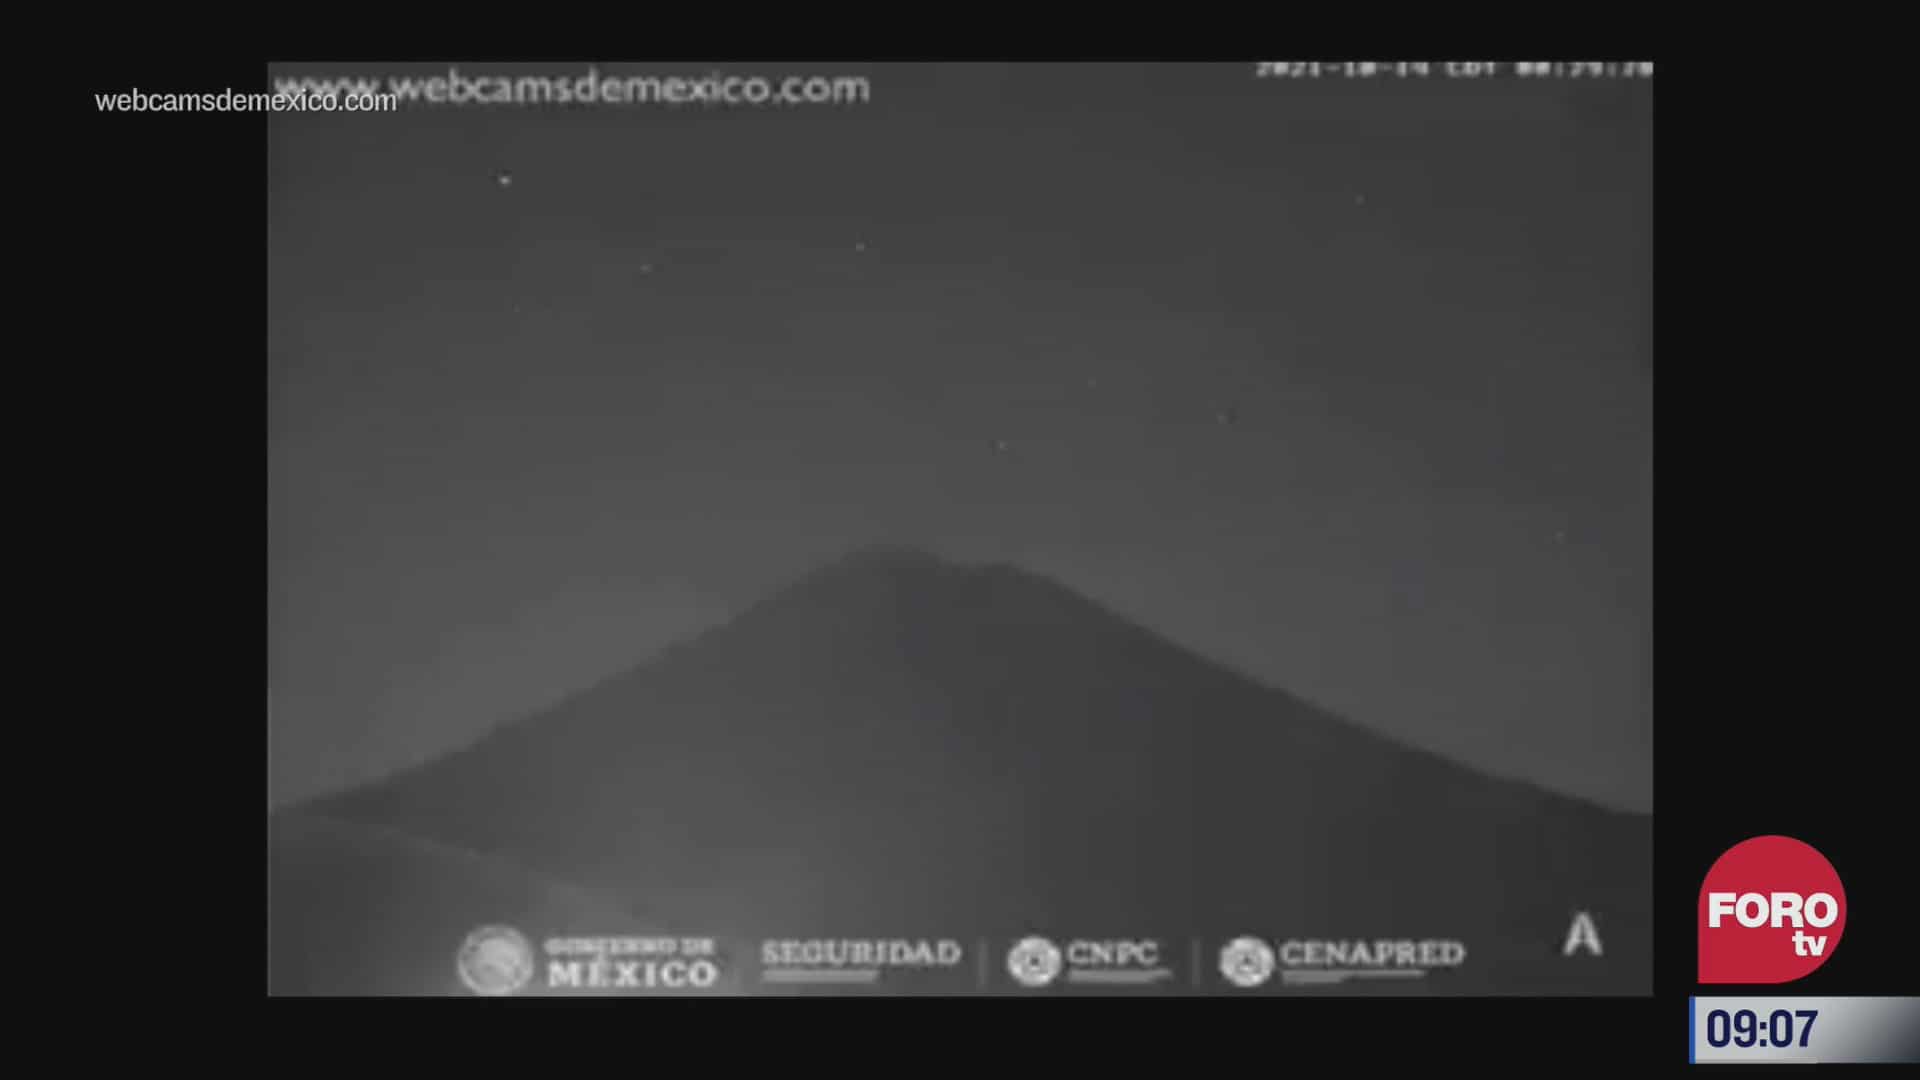 captan extranos ruidos del volcan popocatepetl